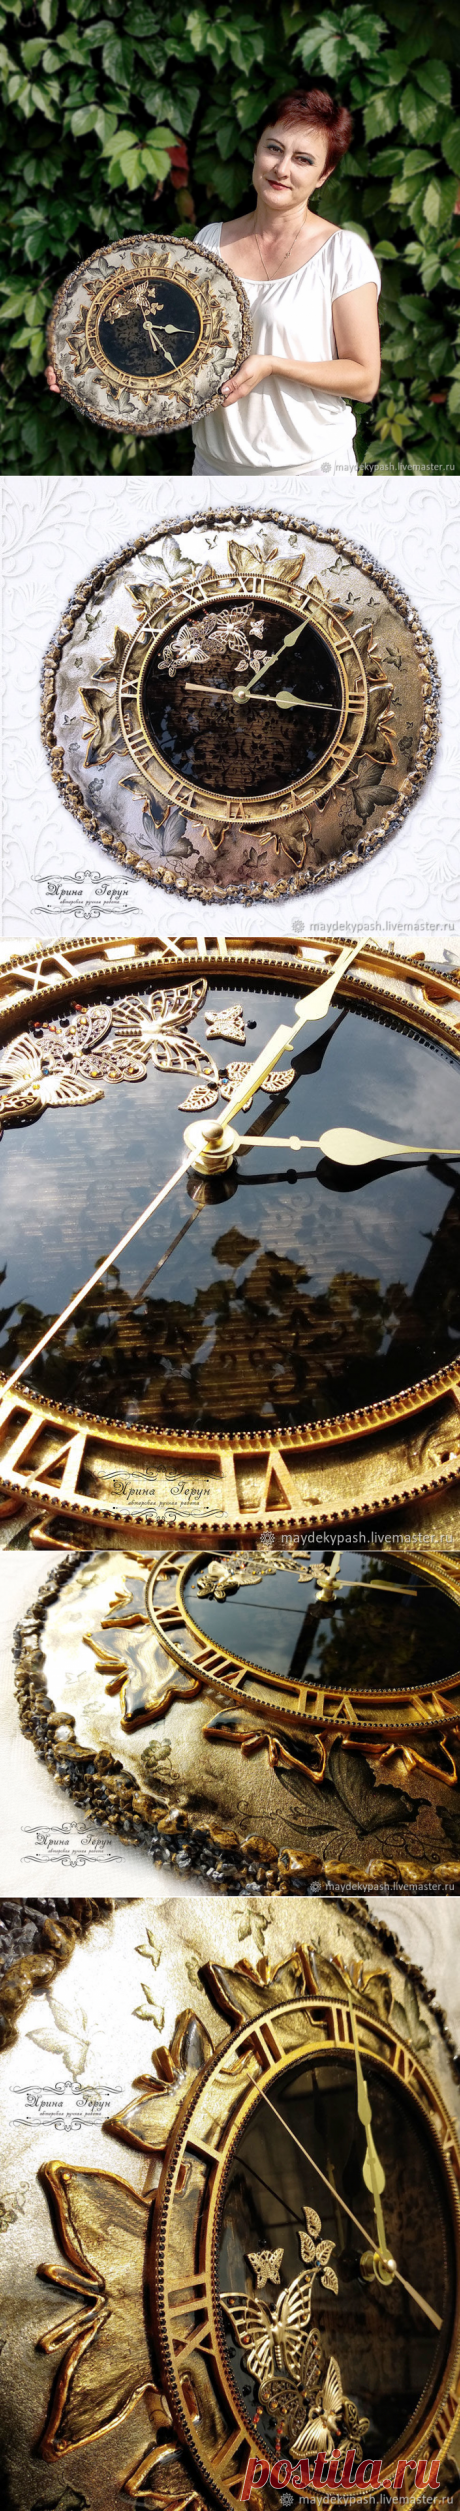 Часы "Танец бабочек" – купить в интернет-магазине на Ярмарке Мастеров с доставкой - GLBJVRU | Шацк